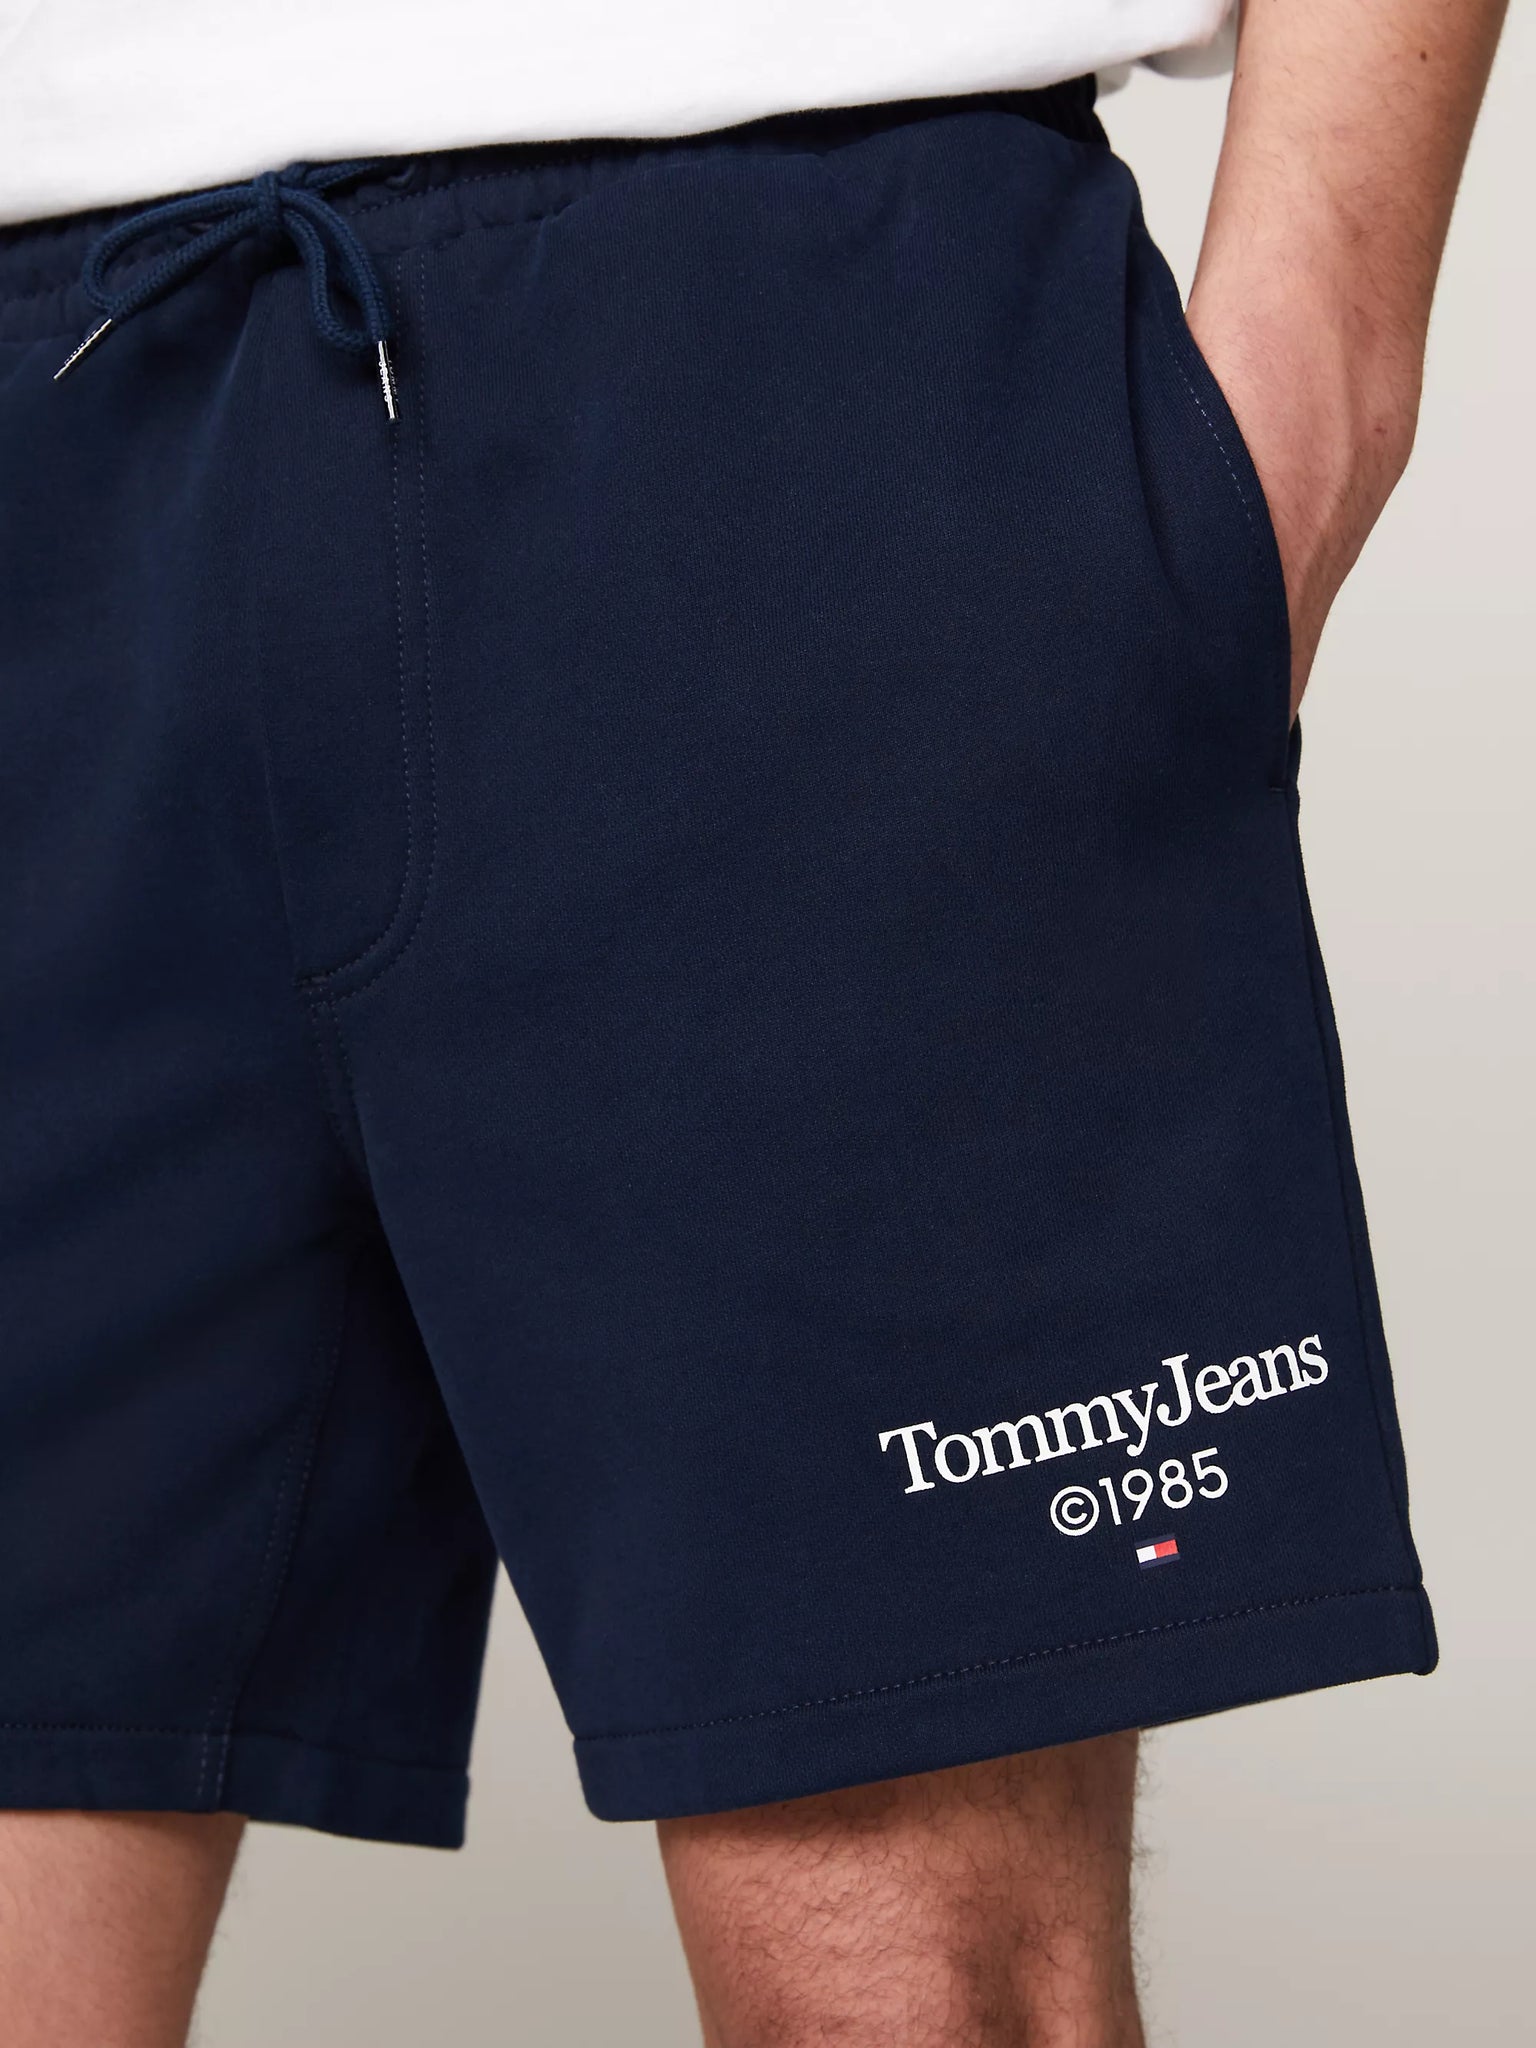 Pantalón Tommy Jeans Corto de Deporte con Logo Gráfico